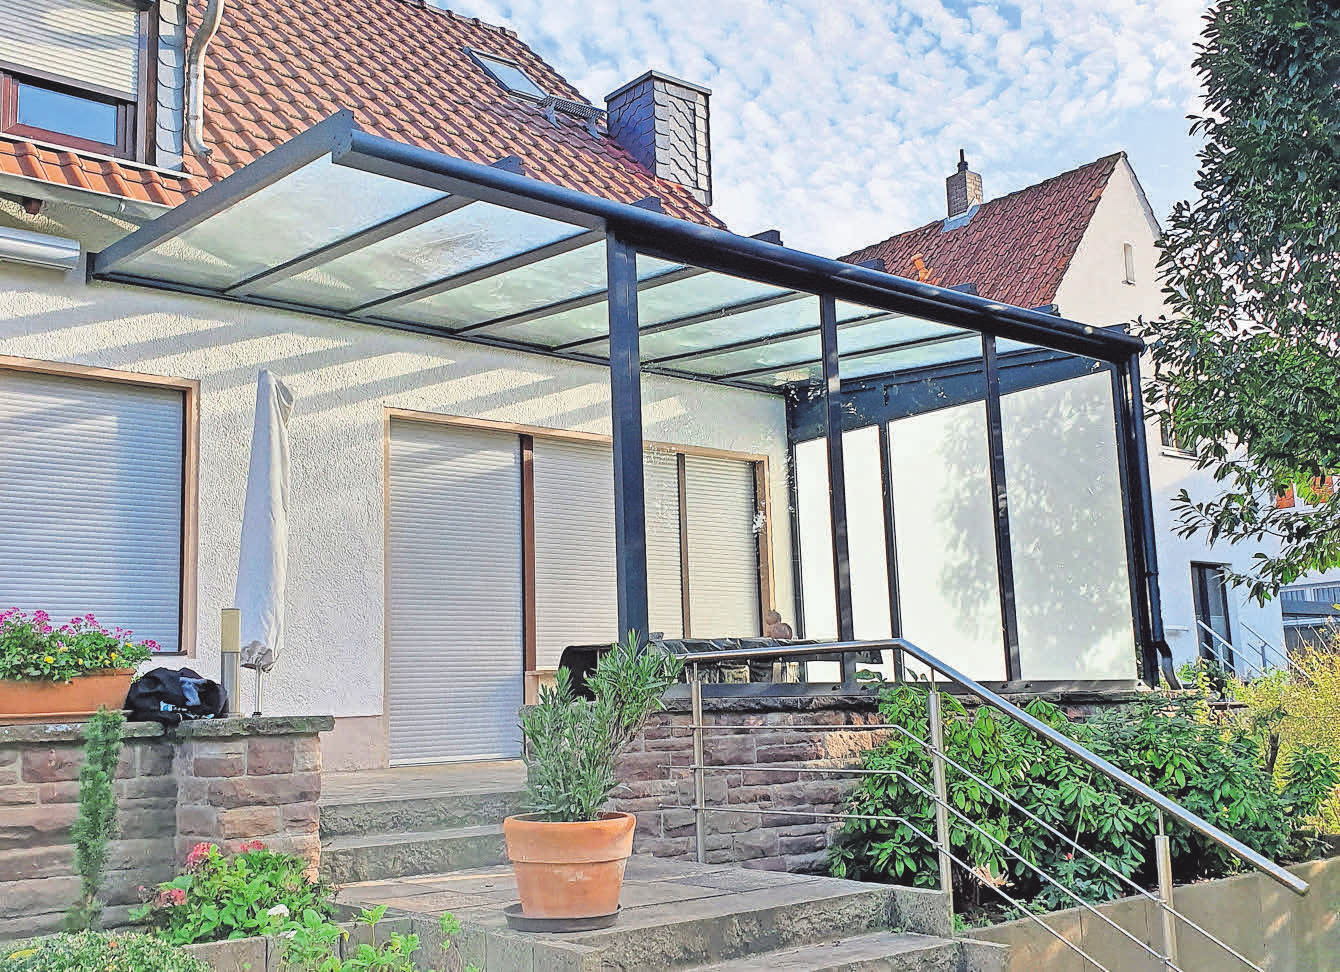 Clevere Konstruktion: BÖLSCHE Glas- und Bau­- elemente fertigt individuelle Terrassendächer für jedes Haus. Fotos: BÖLSCHE Glas- und Bauelemente (2)